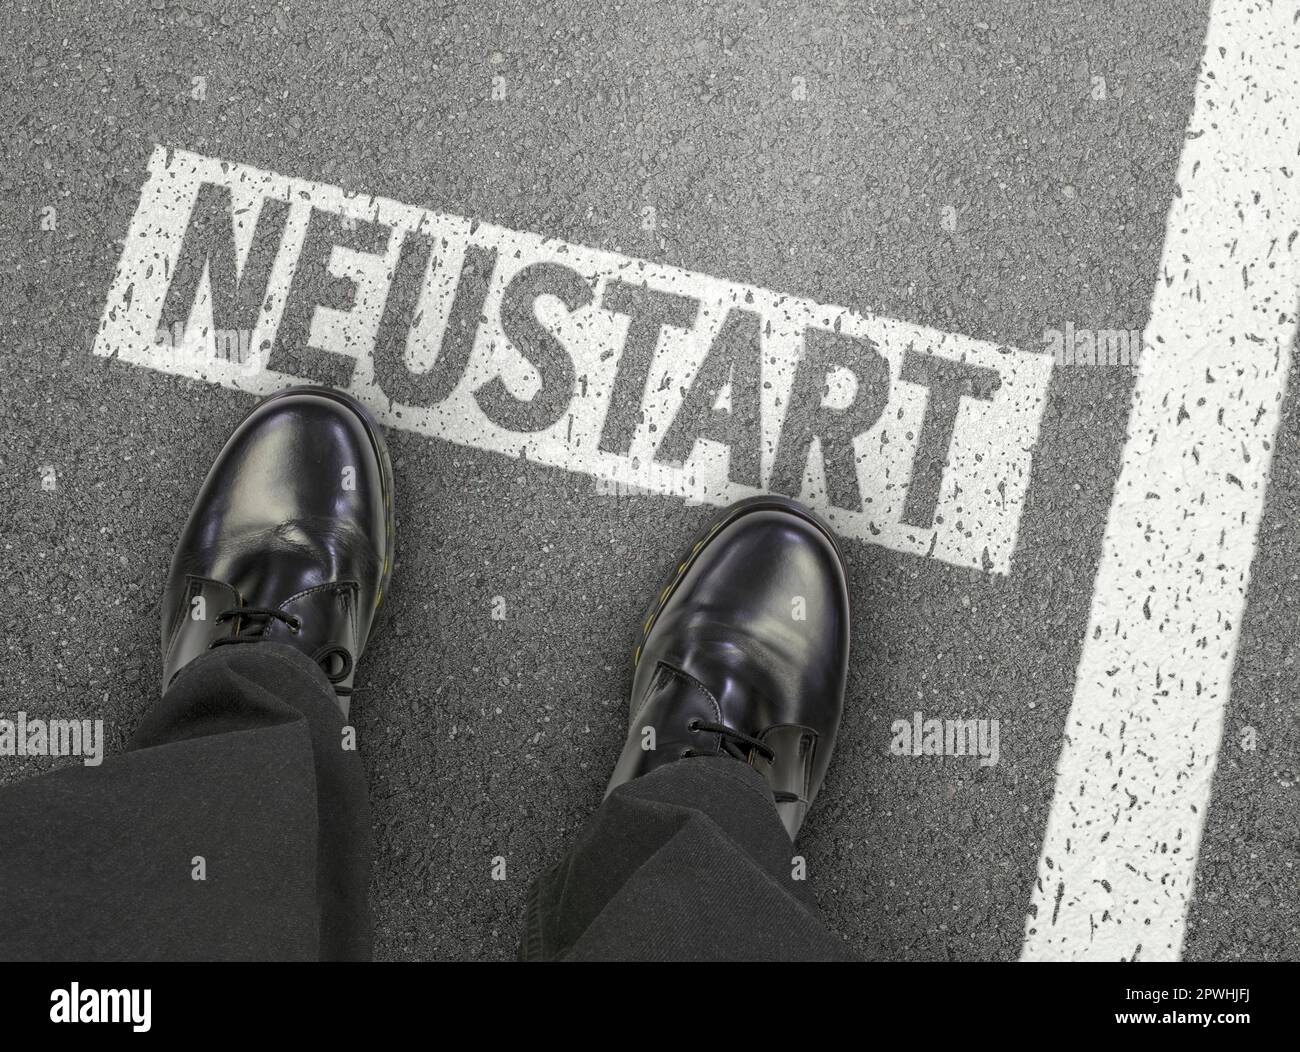 New start, new beginning, start, new start, change life job, profession, start, career, restart, go, startline, new way, business, road, work, now Stock Photo